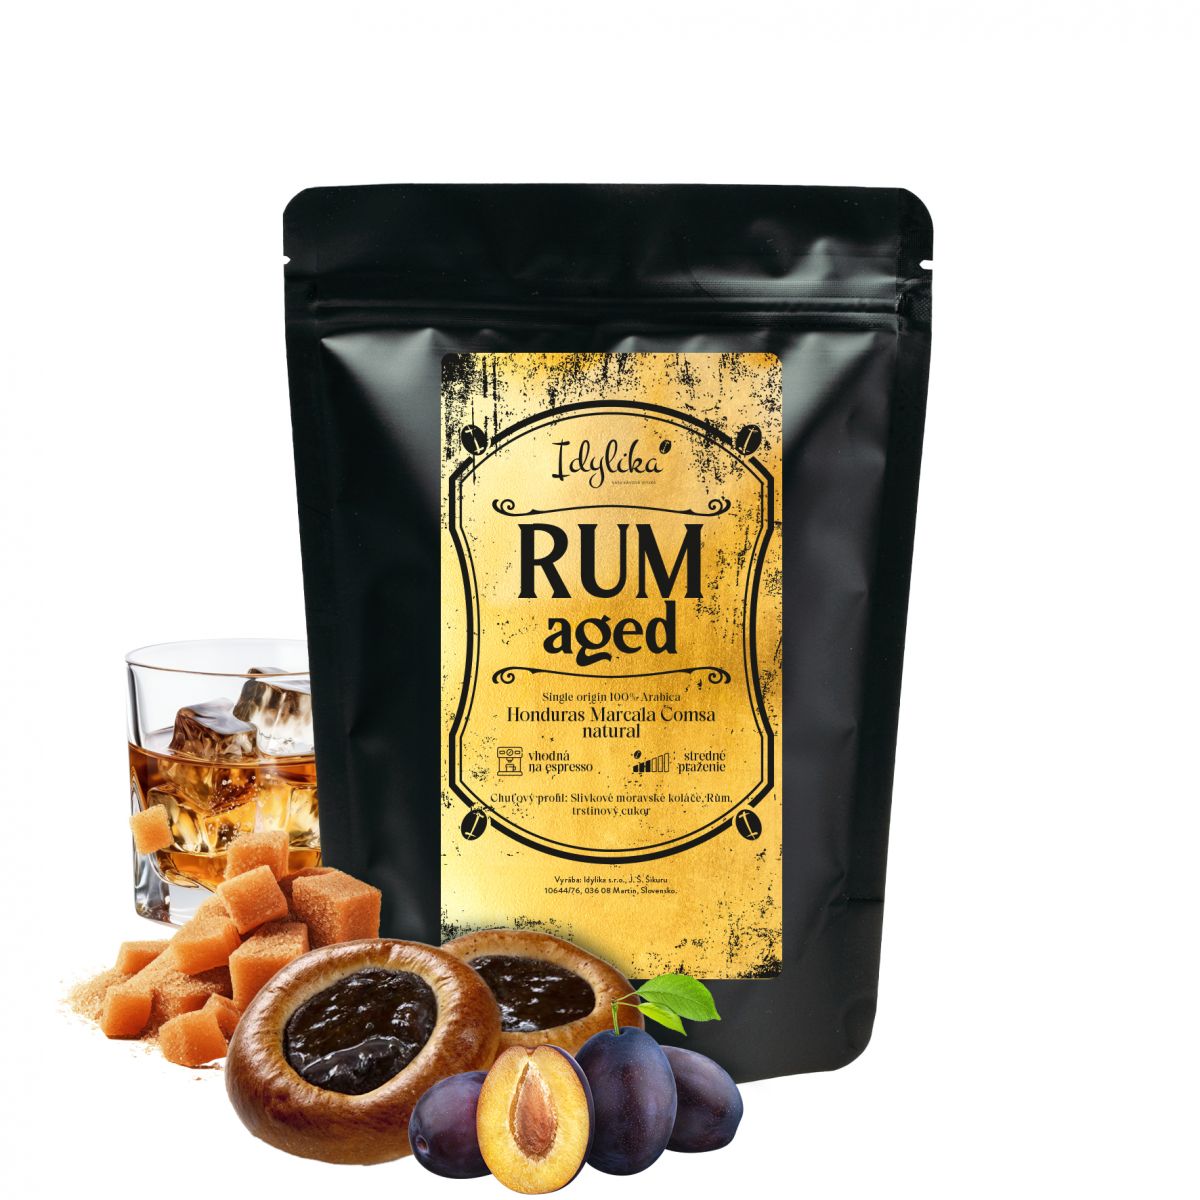 Rum aged